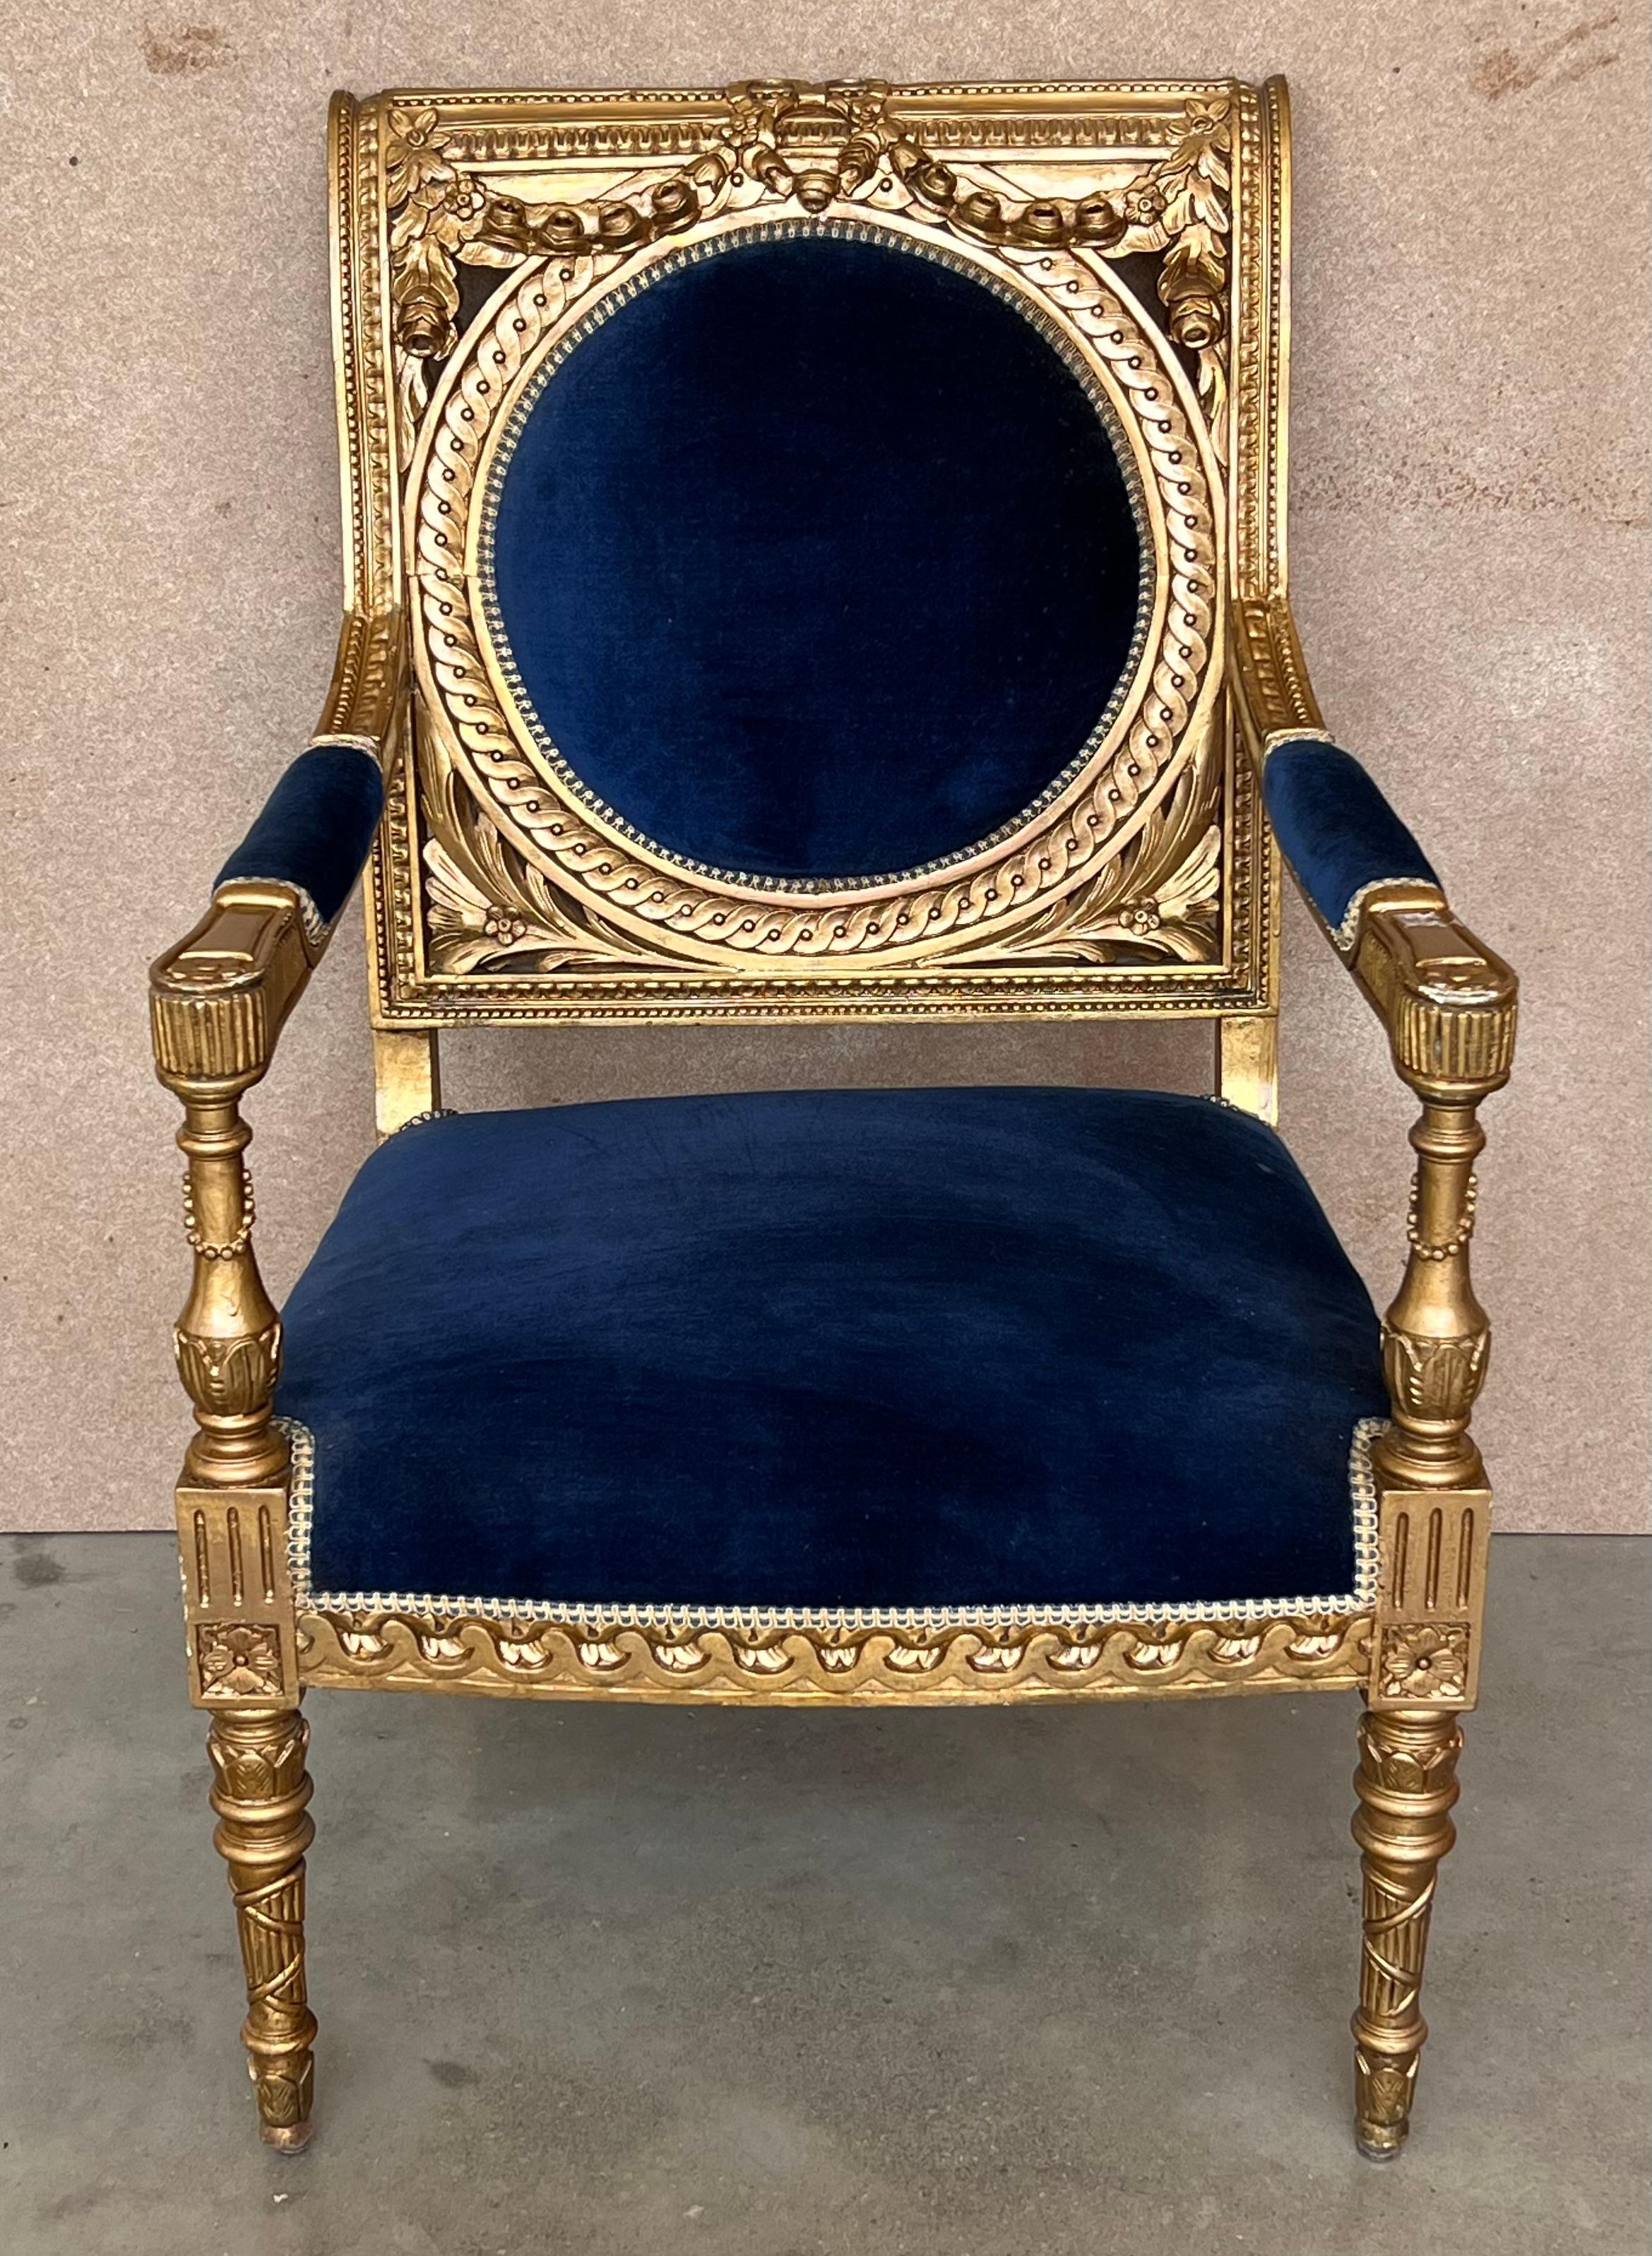 Fauteuil de style Louis XVI avec dossier en médaillon.
 Elegamment sculptée et finie à la main dans une patine à deux tons, dorée ou écrue, légèrement vieillie. Fabriqués selon des méthodes et des matériaux traditionnels. Tapissé de velours bleu.